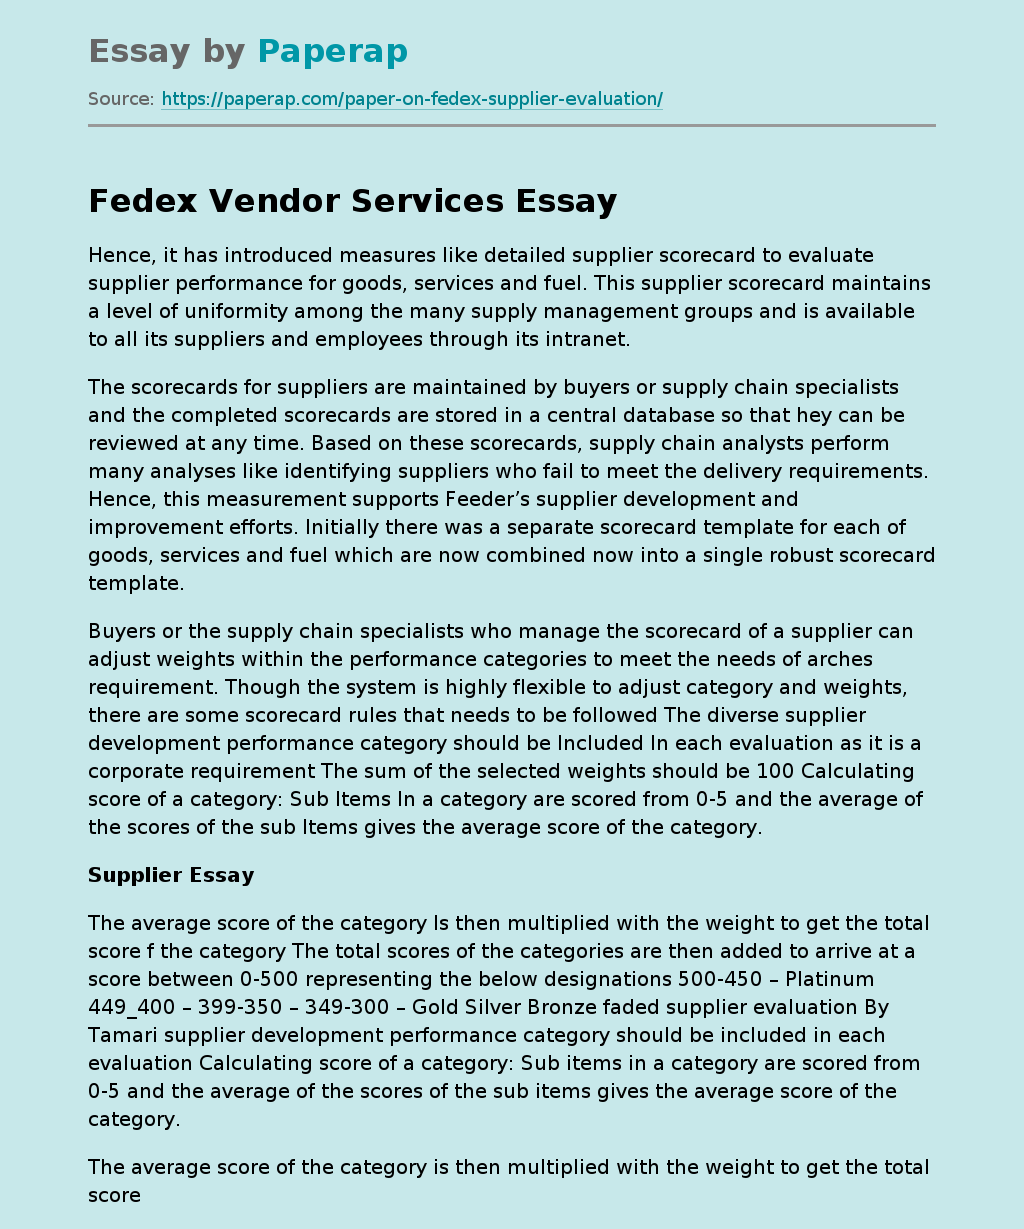 Fedex Vendor Services